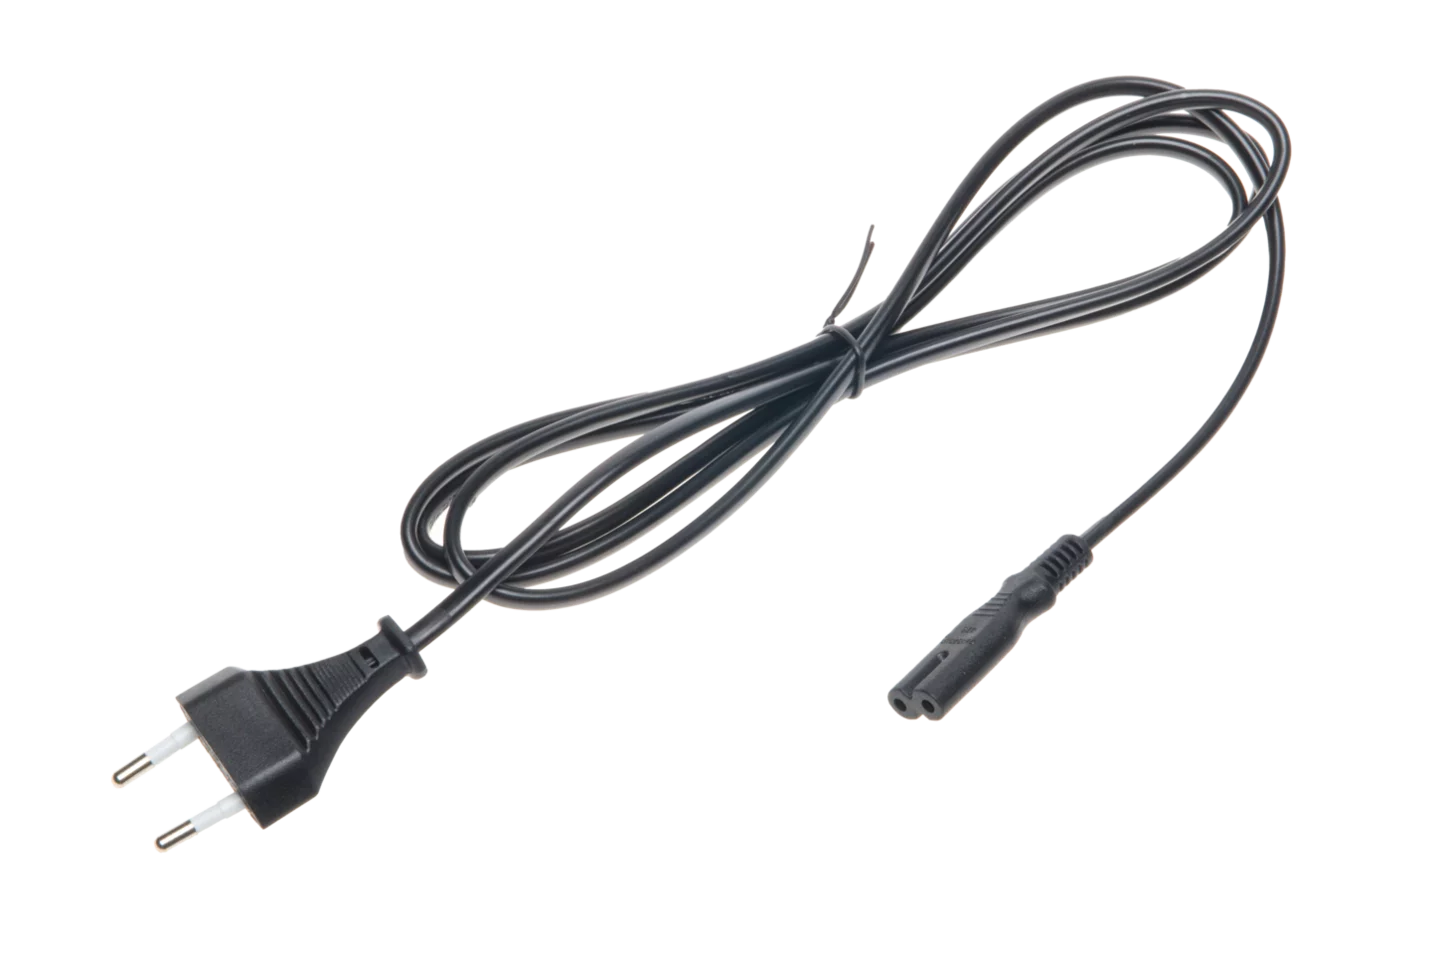 Mains power cable 230 V (IEC C7 plug)